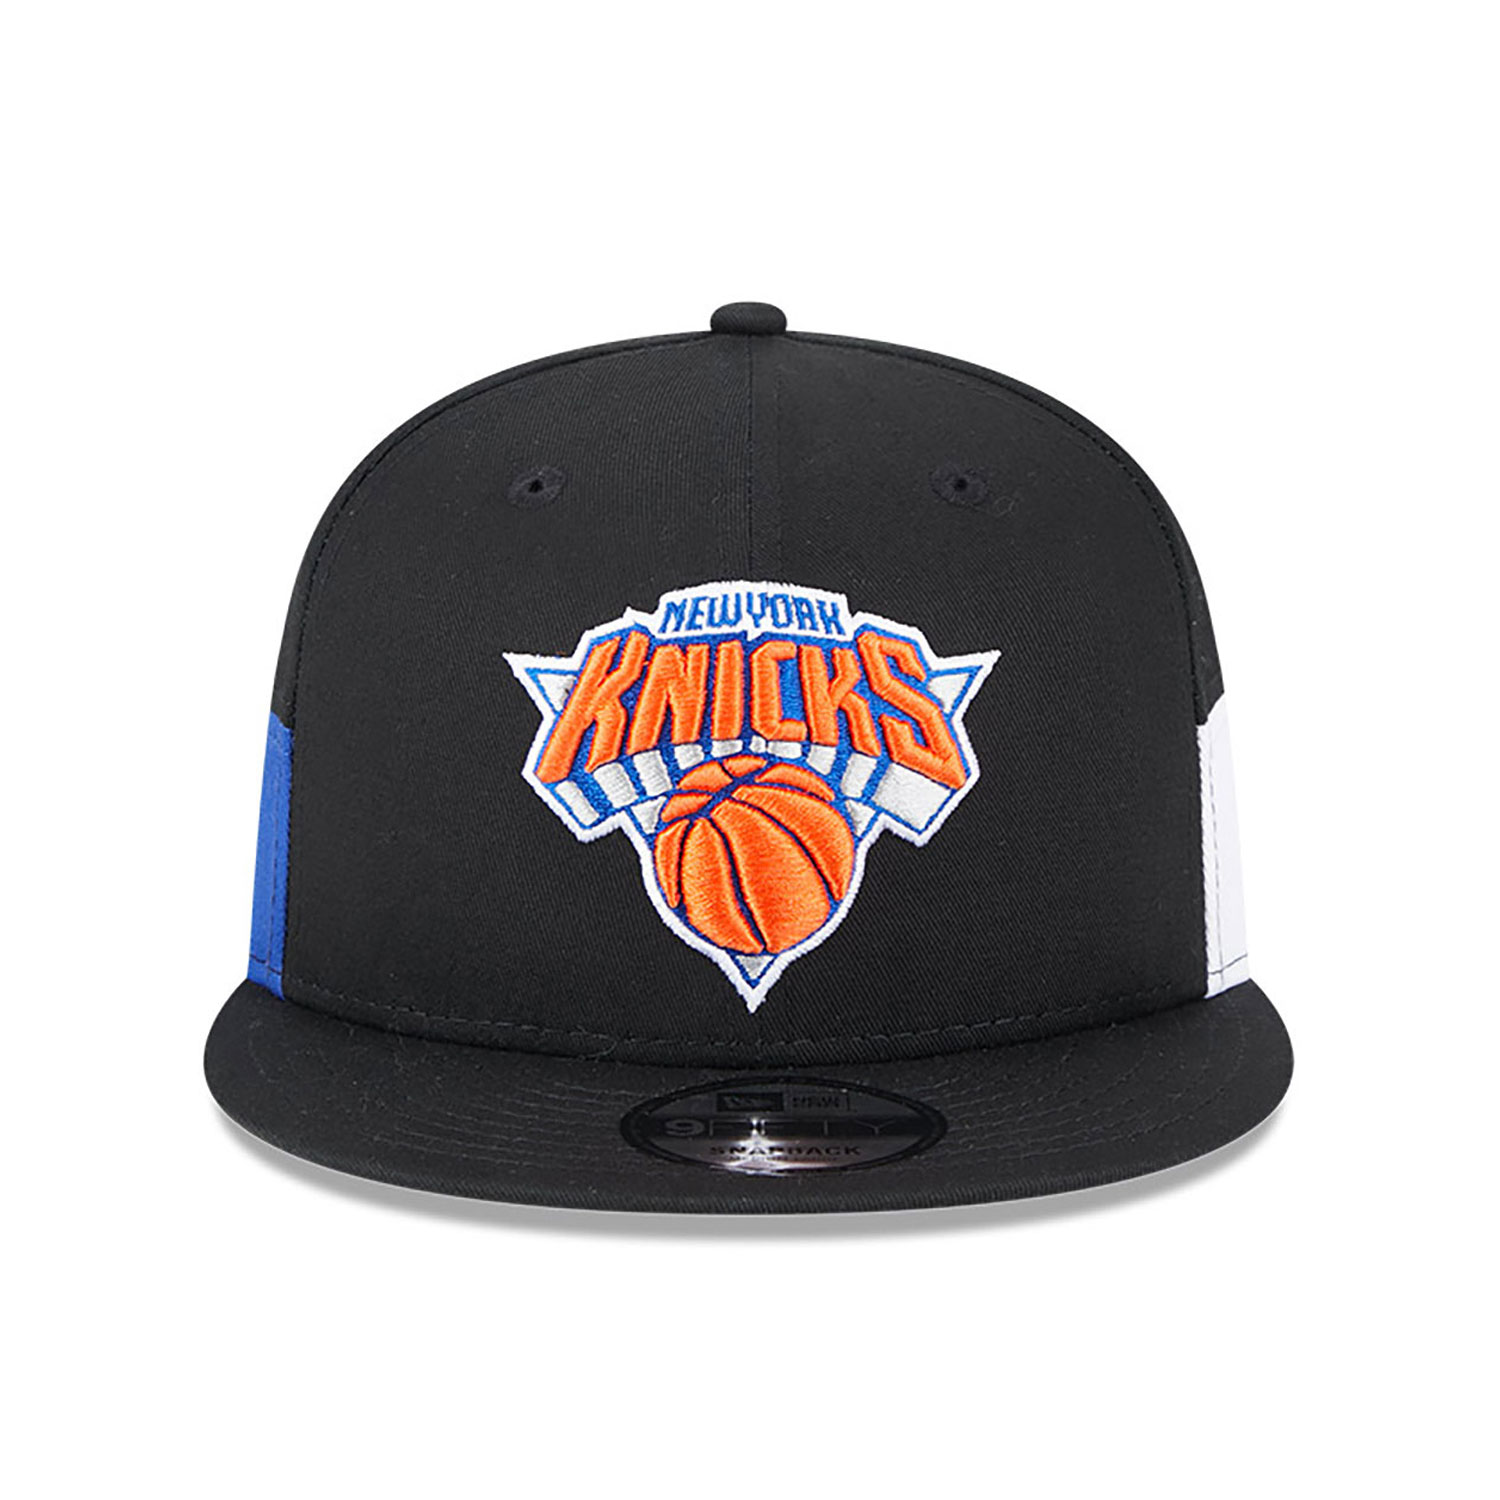 New York Knicks Multi Patch Black 9FIFTY Snapback Cap